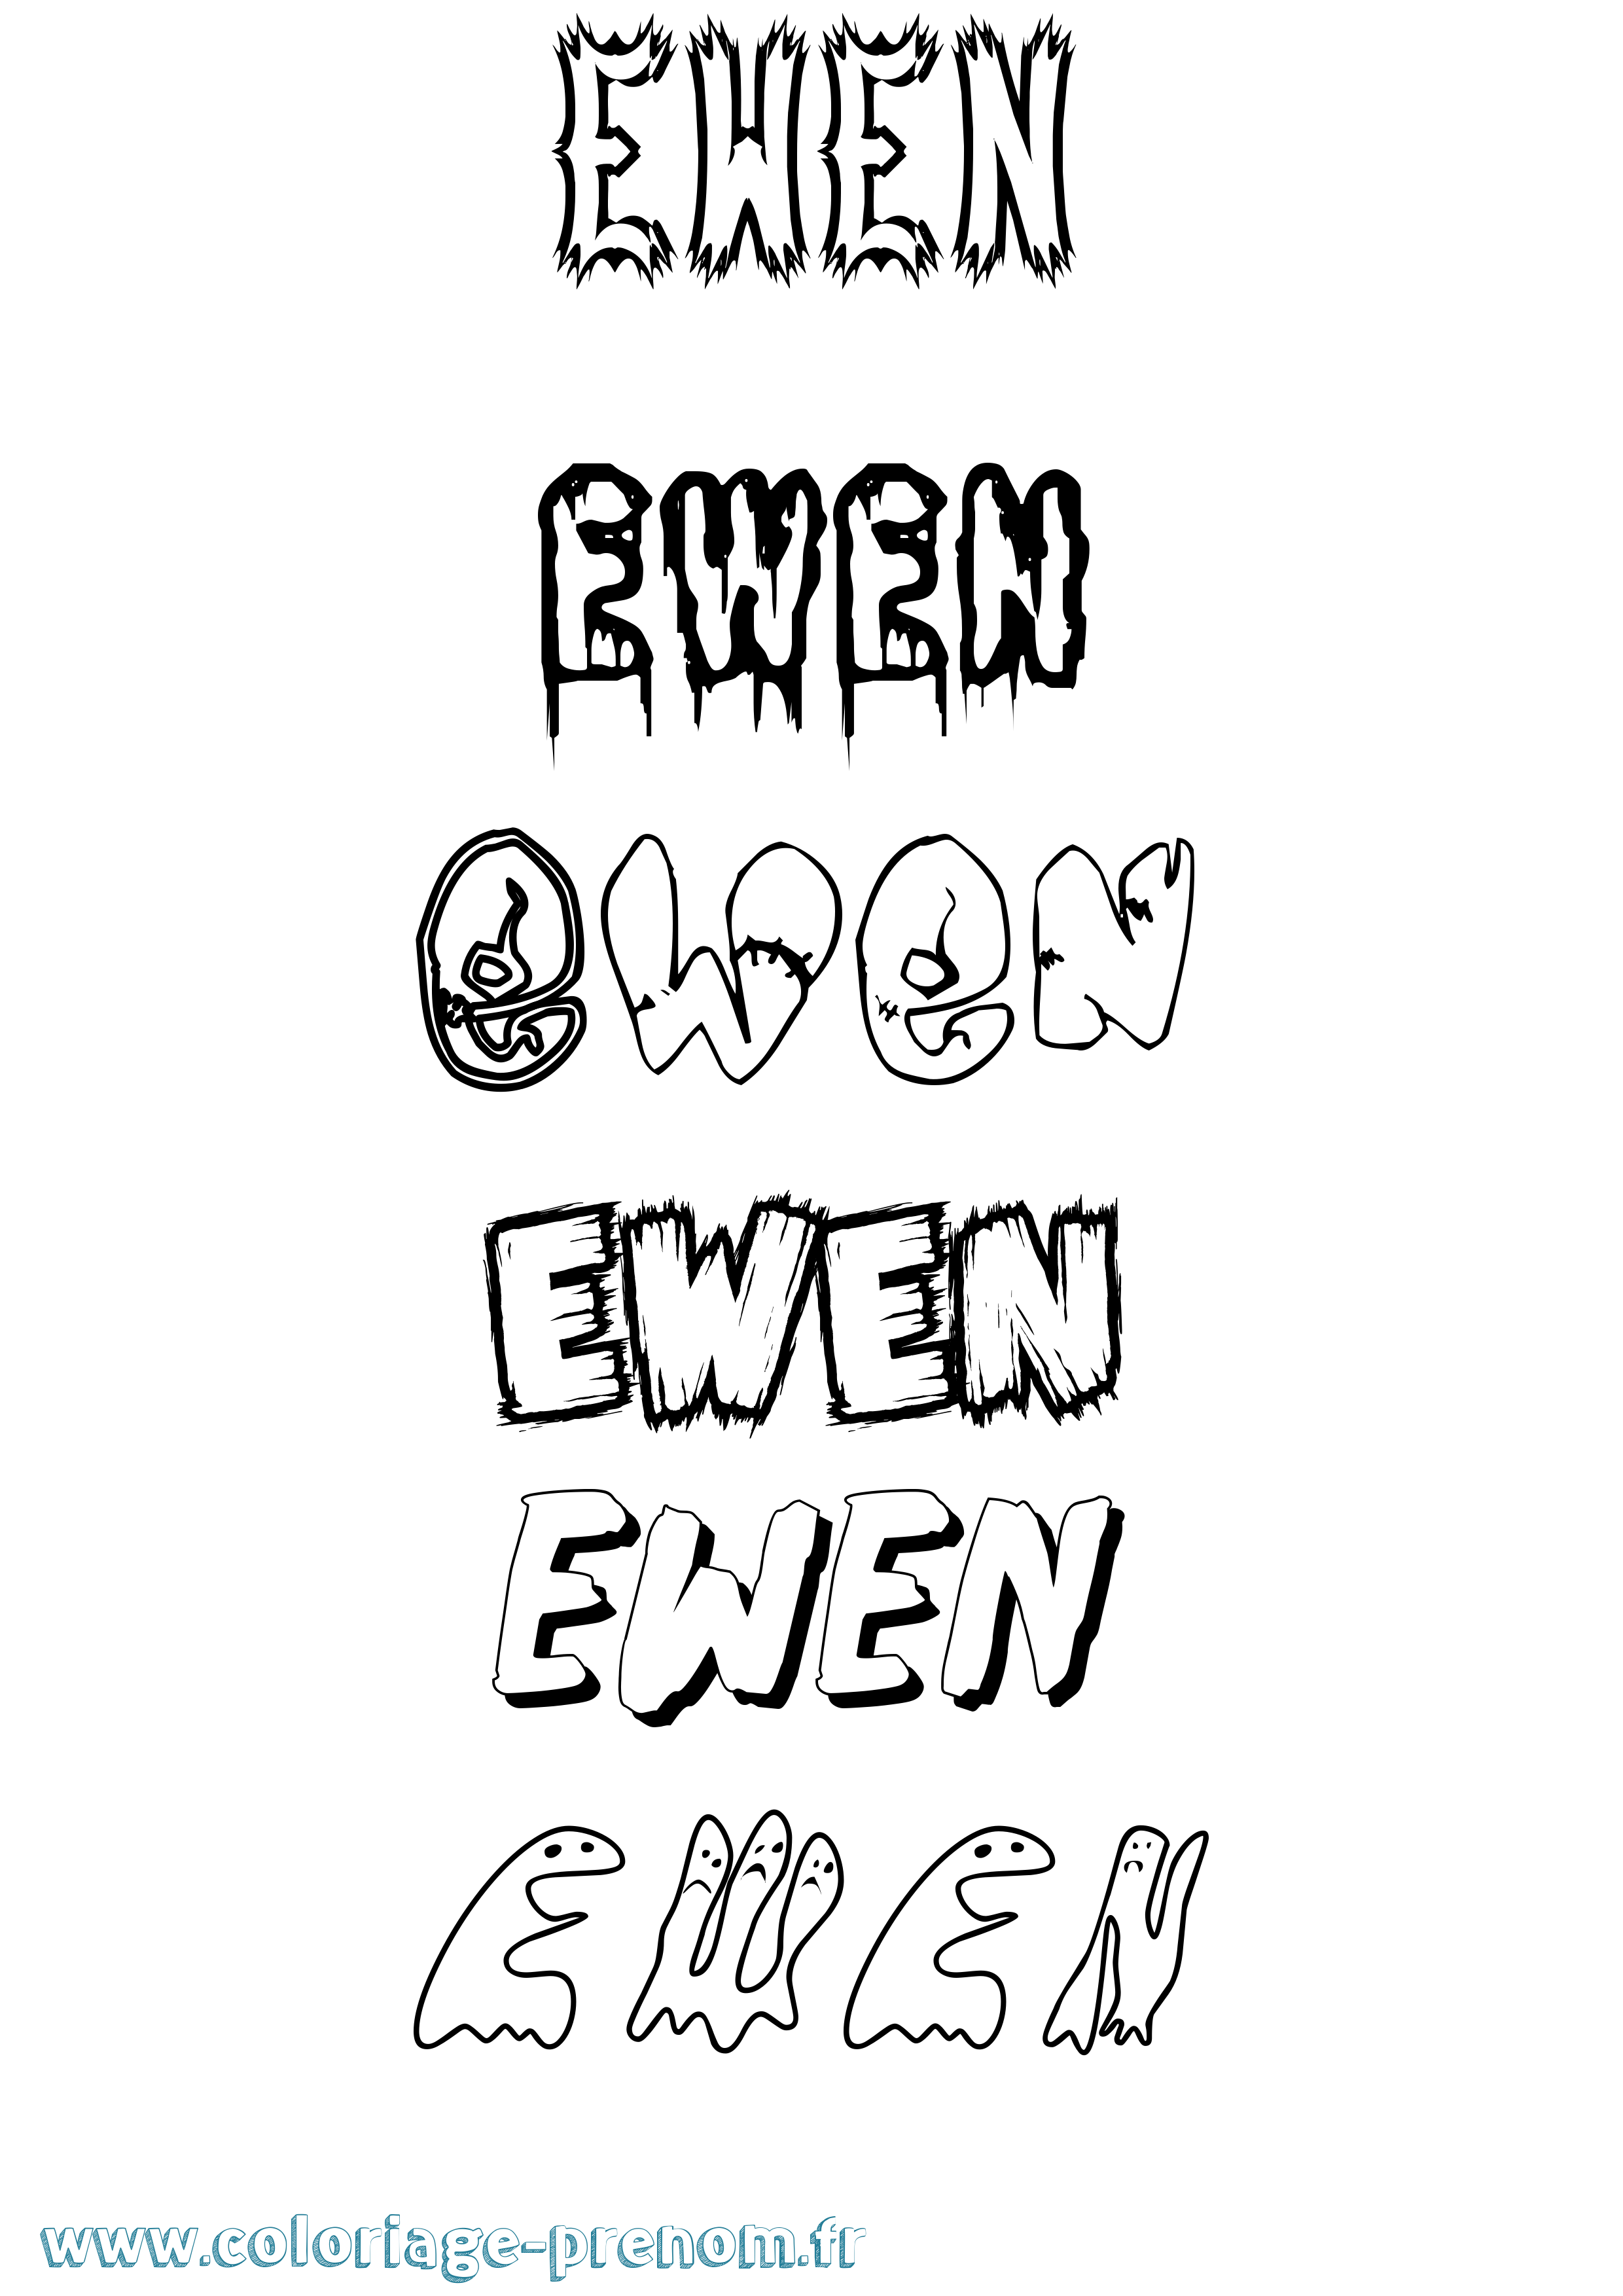 Coloriage prénom Ewen Frisson